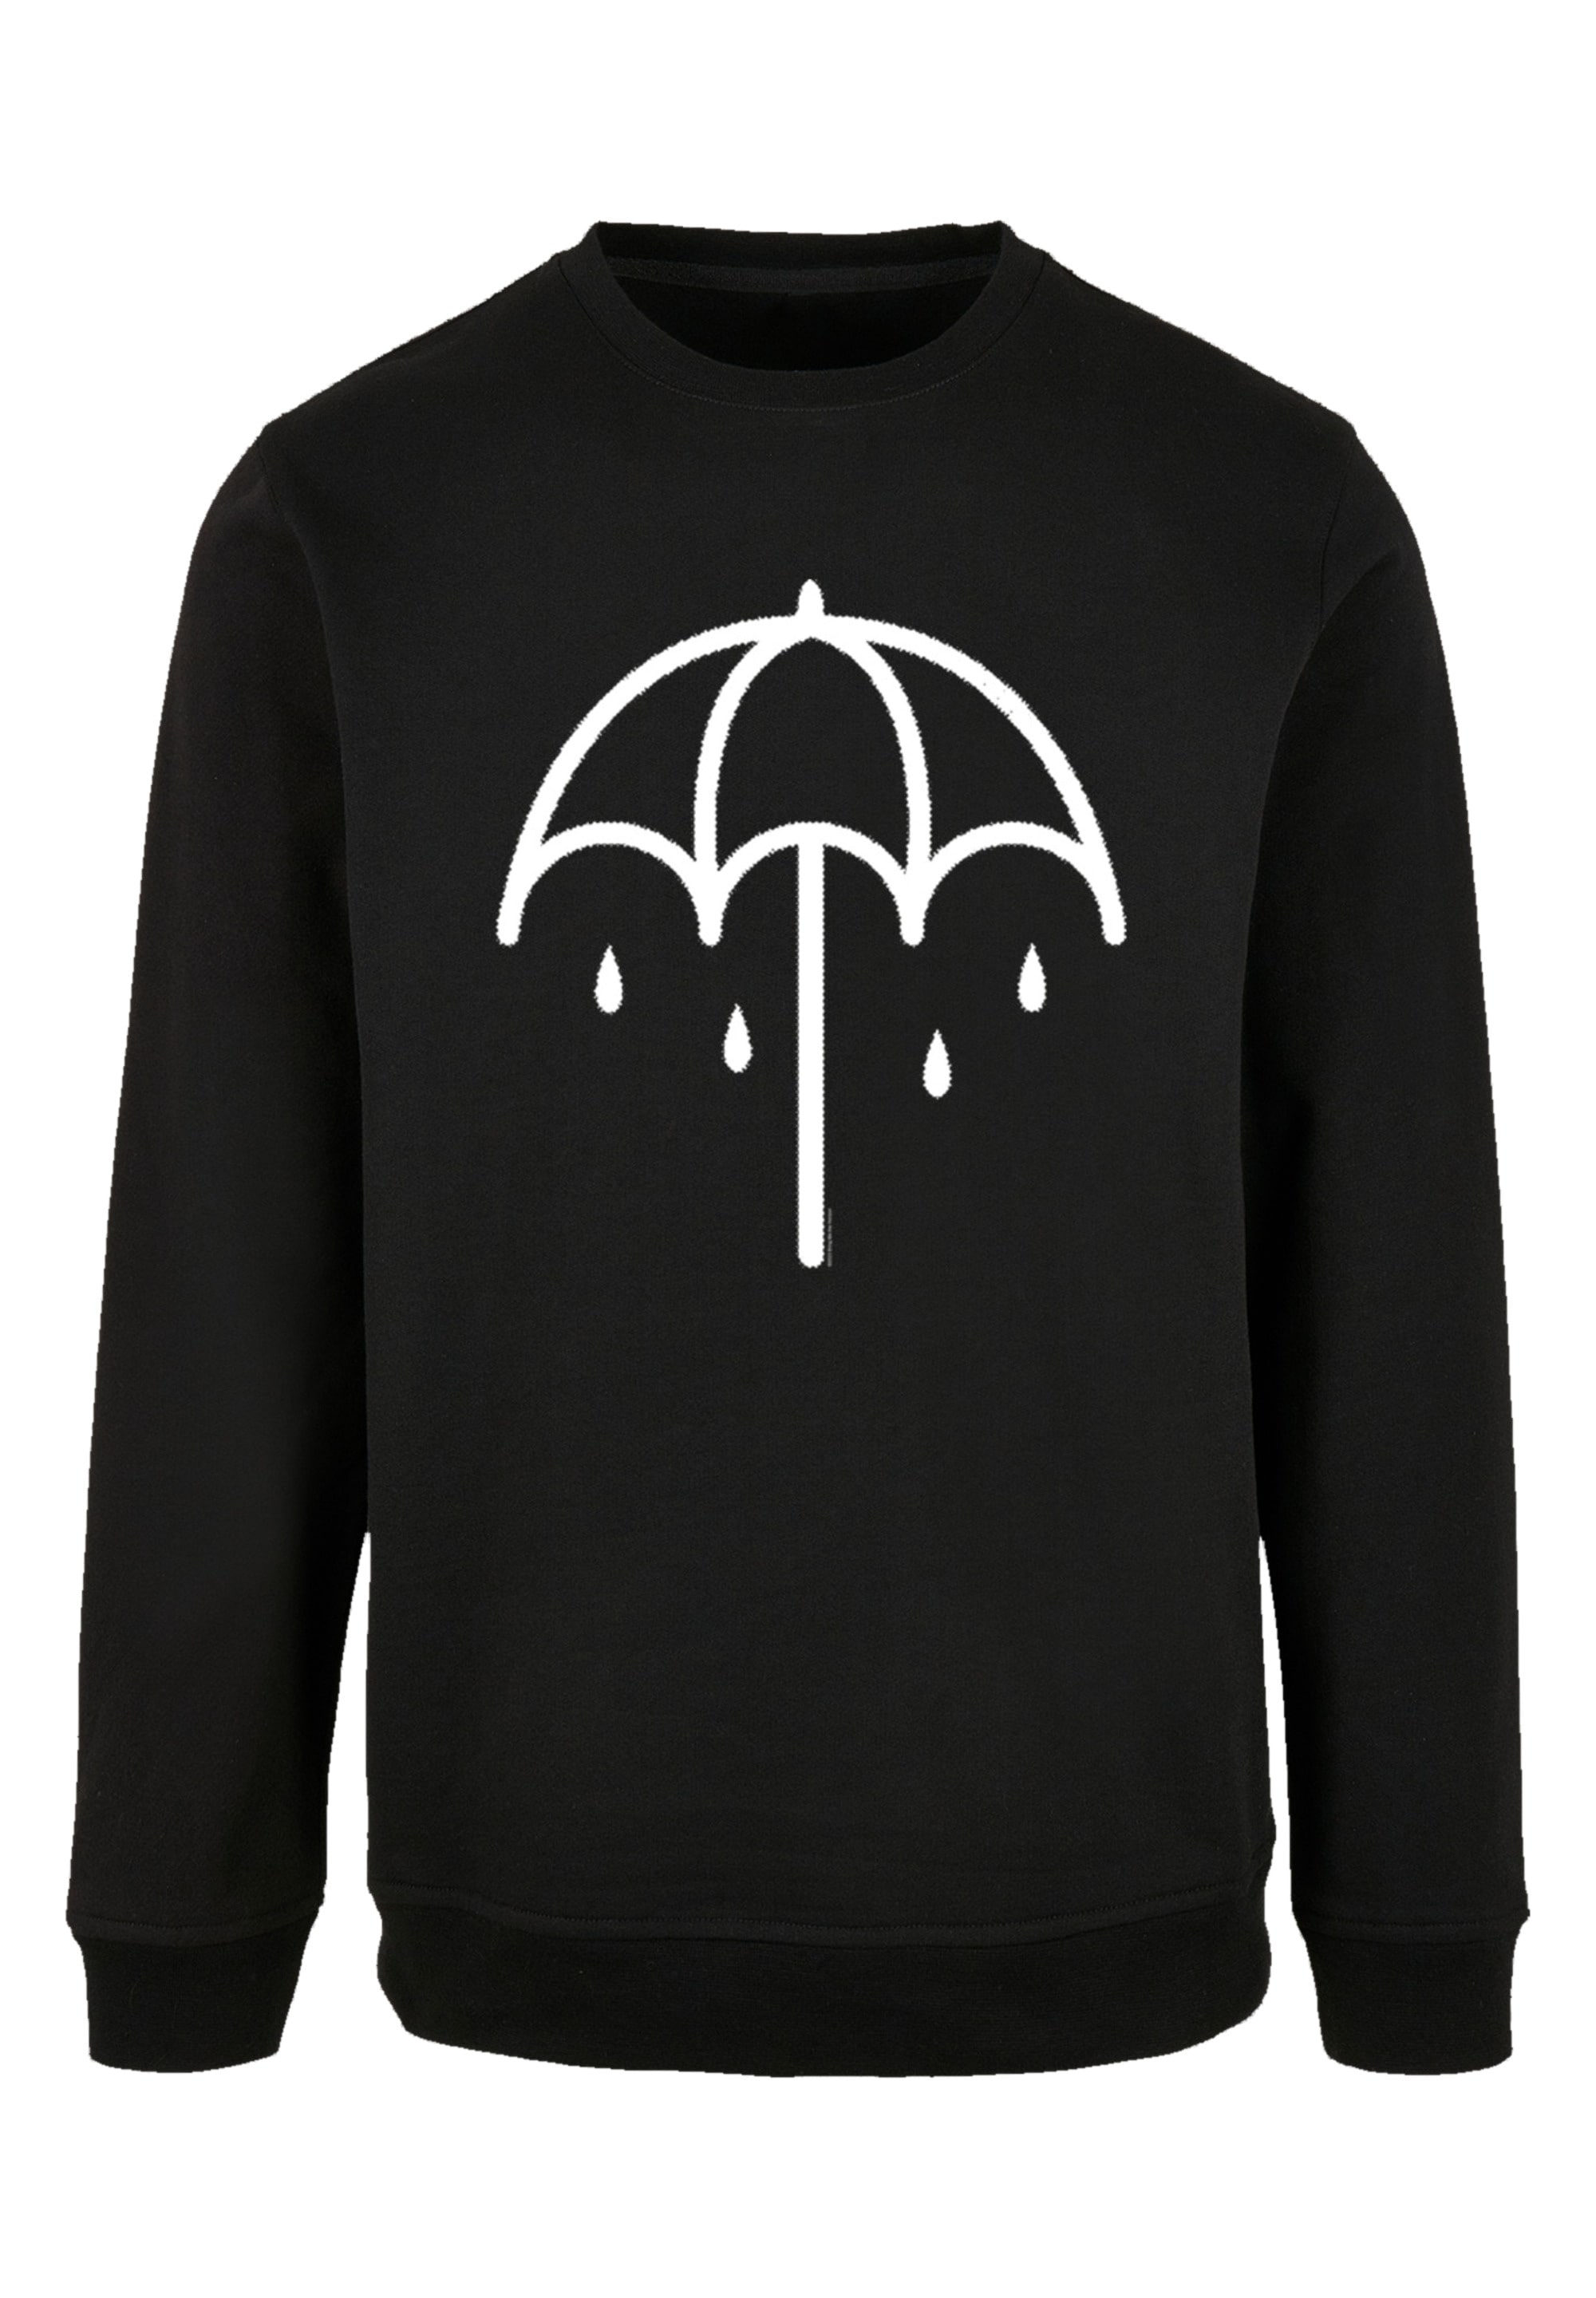 F4NT4STIC Sweatshirt BAUR Premium Band Rock-Musik, Metal Band Umbrella Qualität, online »BMTH DARK«, 2 | kaufen